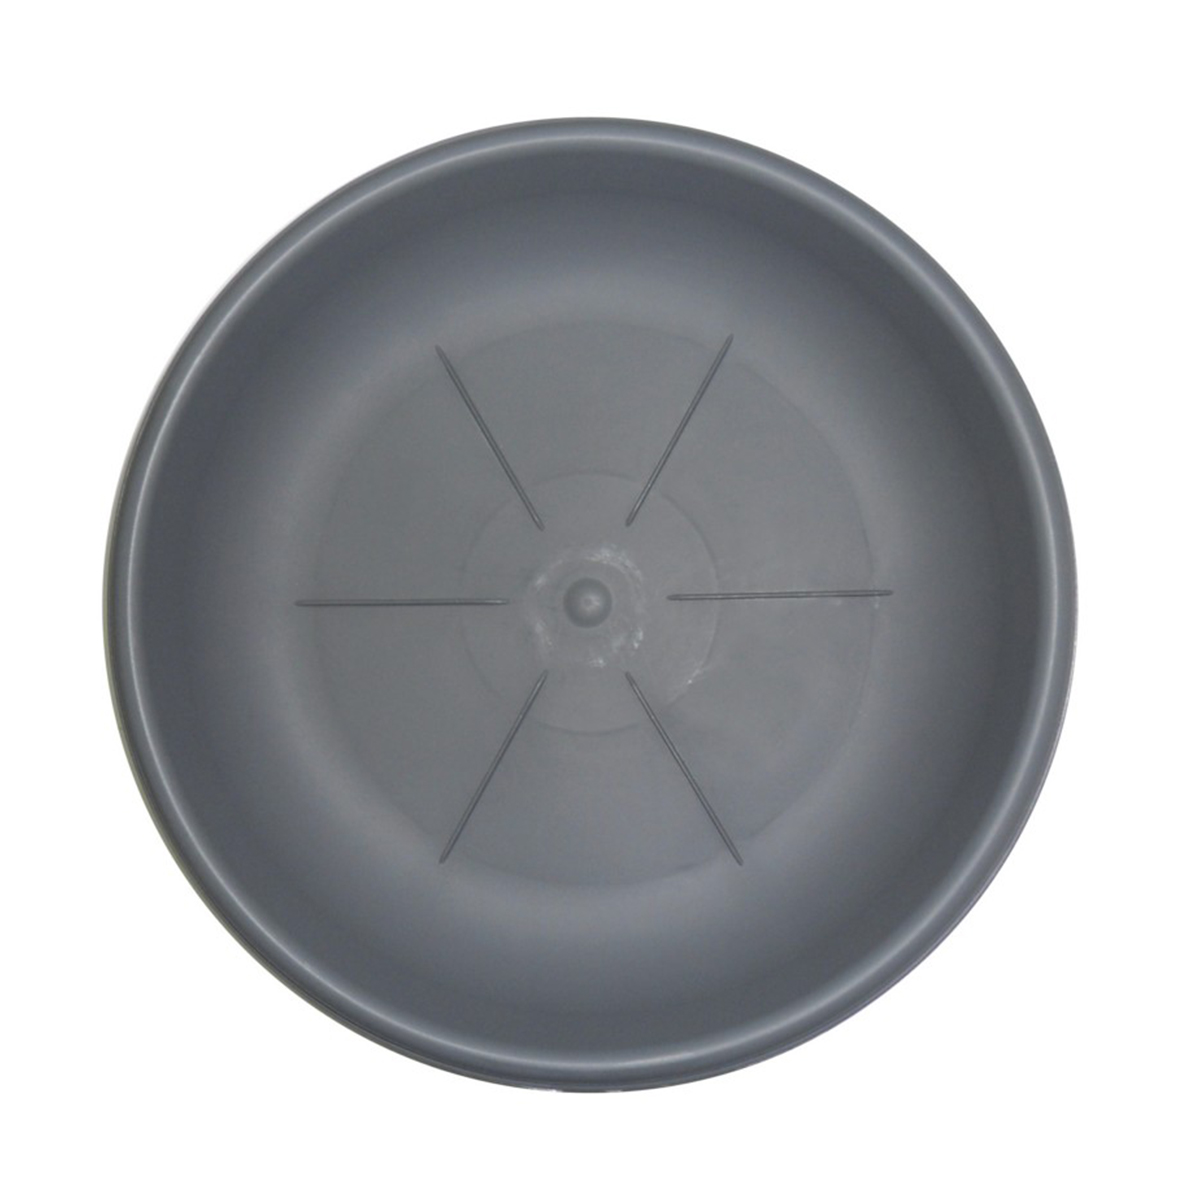 Sottovaso rotondo Bama diametro 35 cm colore grigio